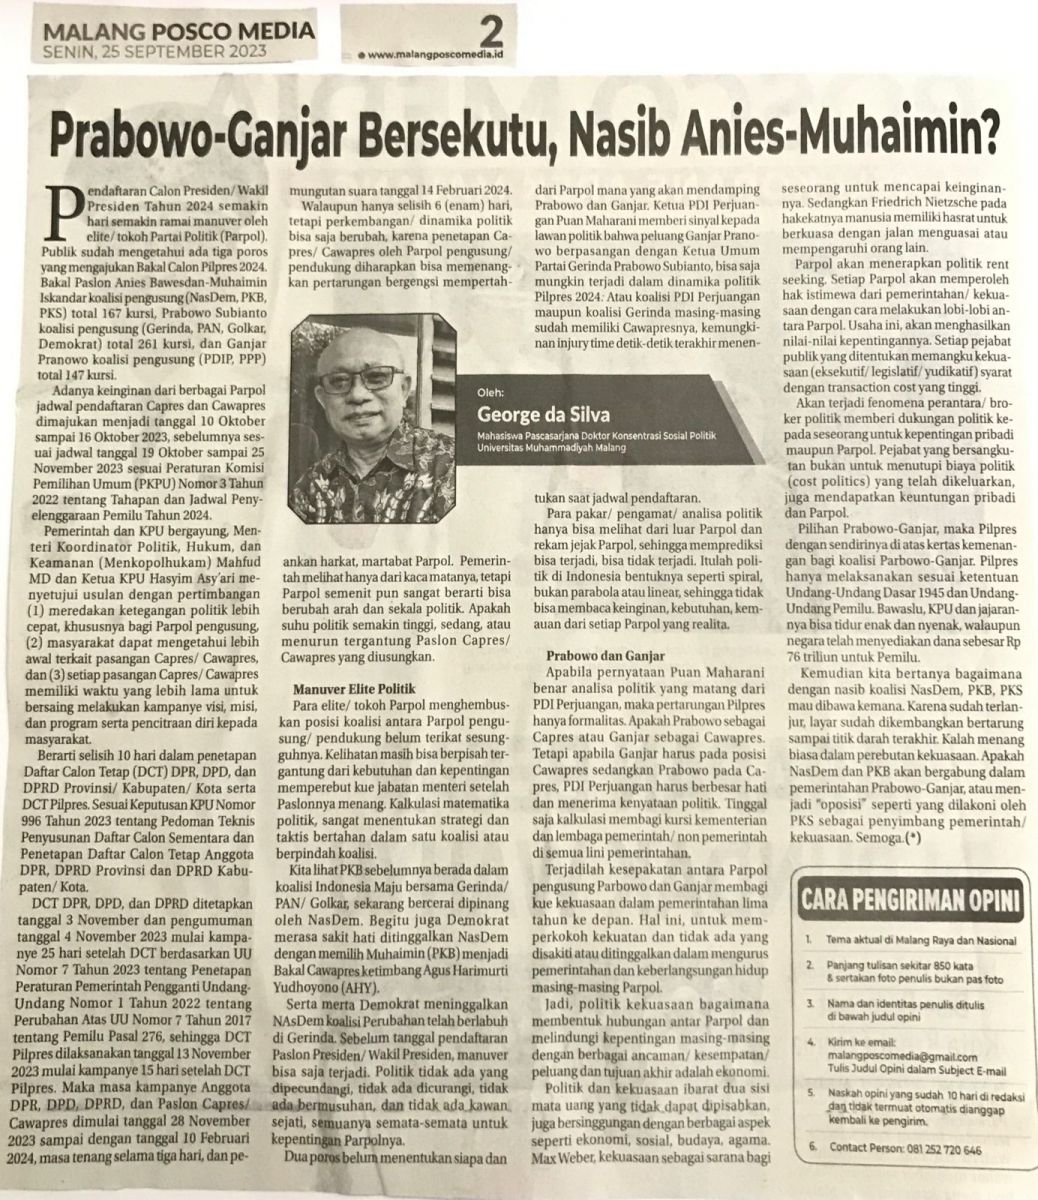 Prabowo-Ganjar Bersekutu, Nasib Anies-Muhaimin?